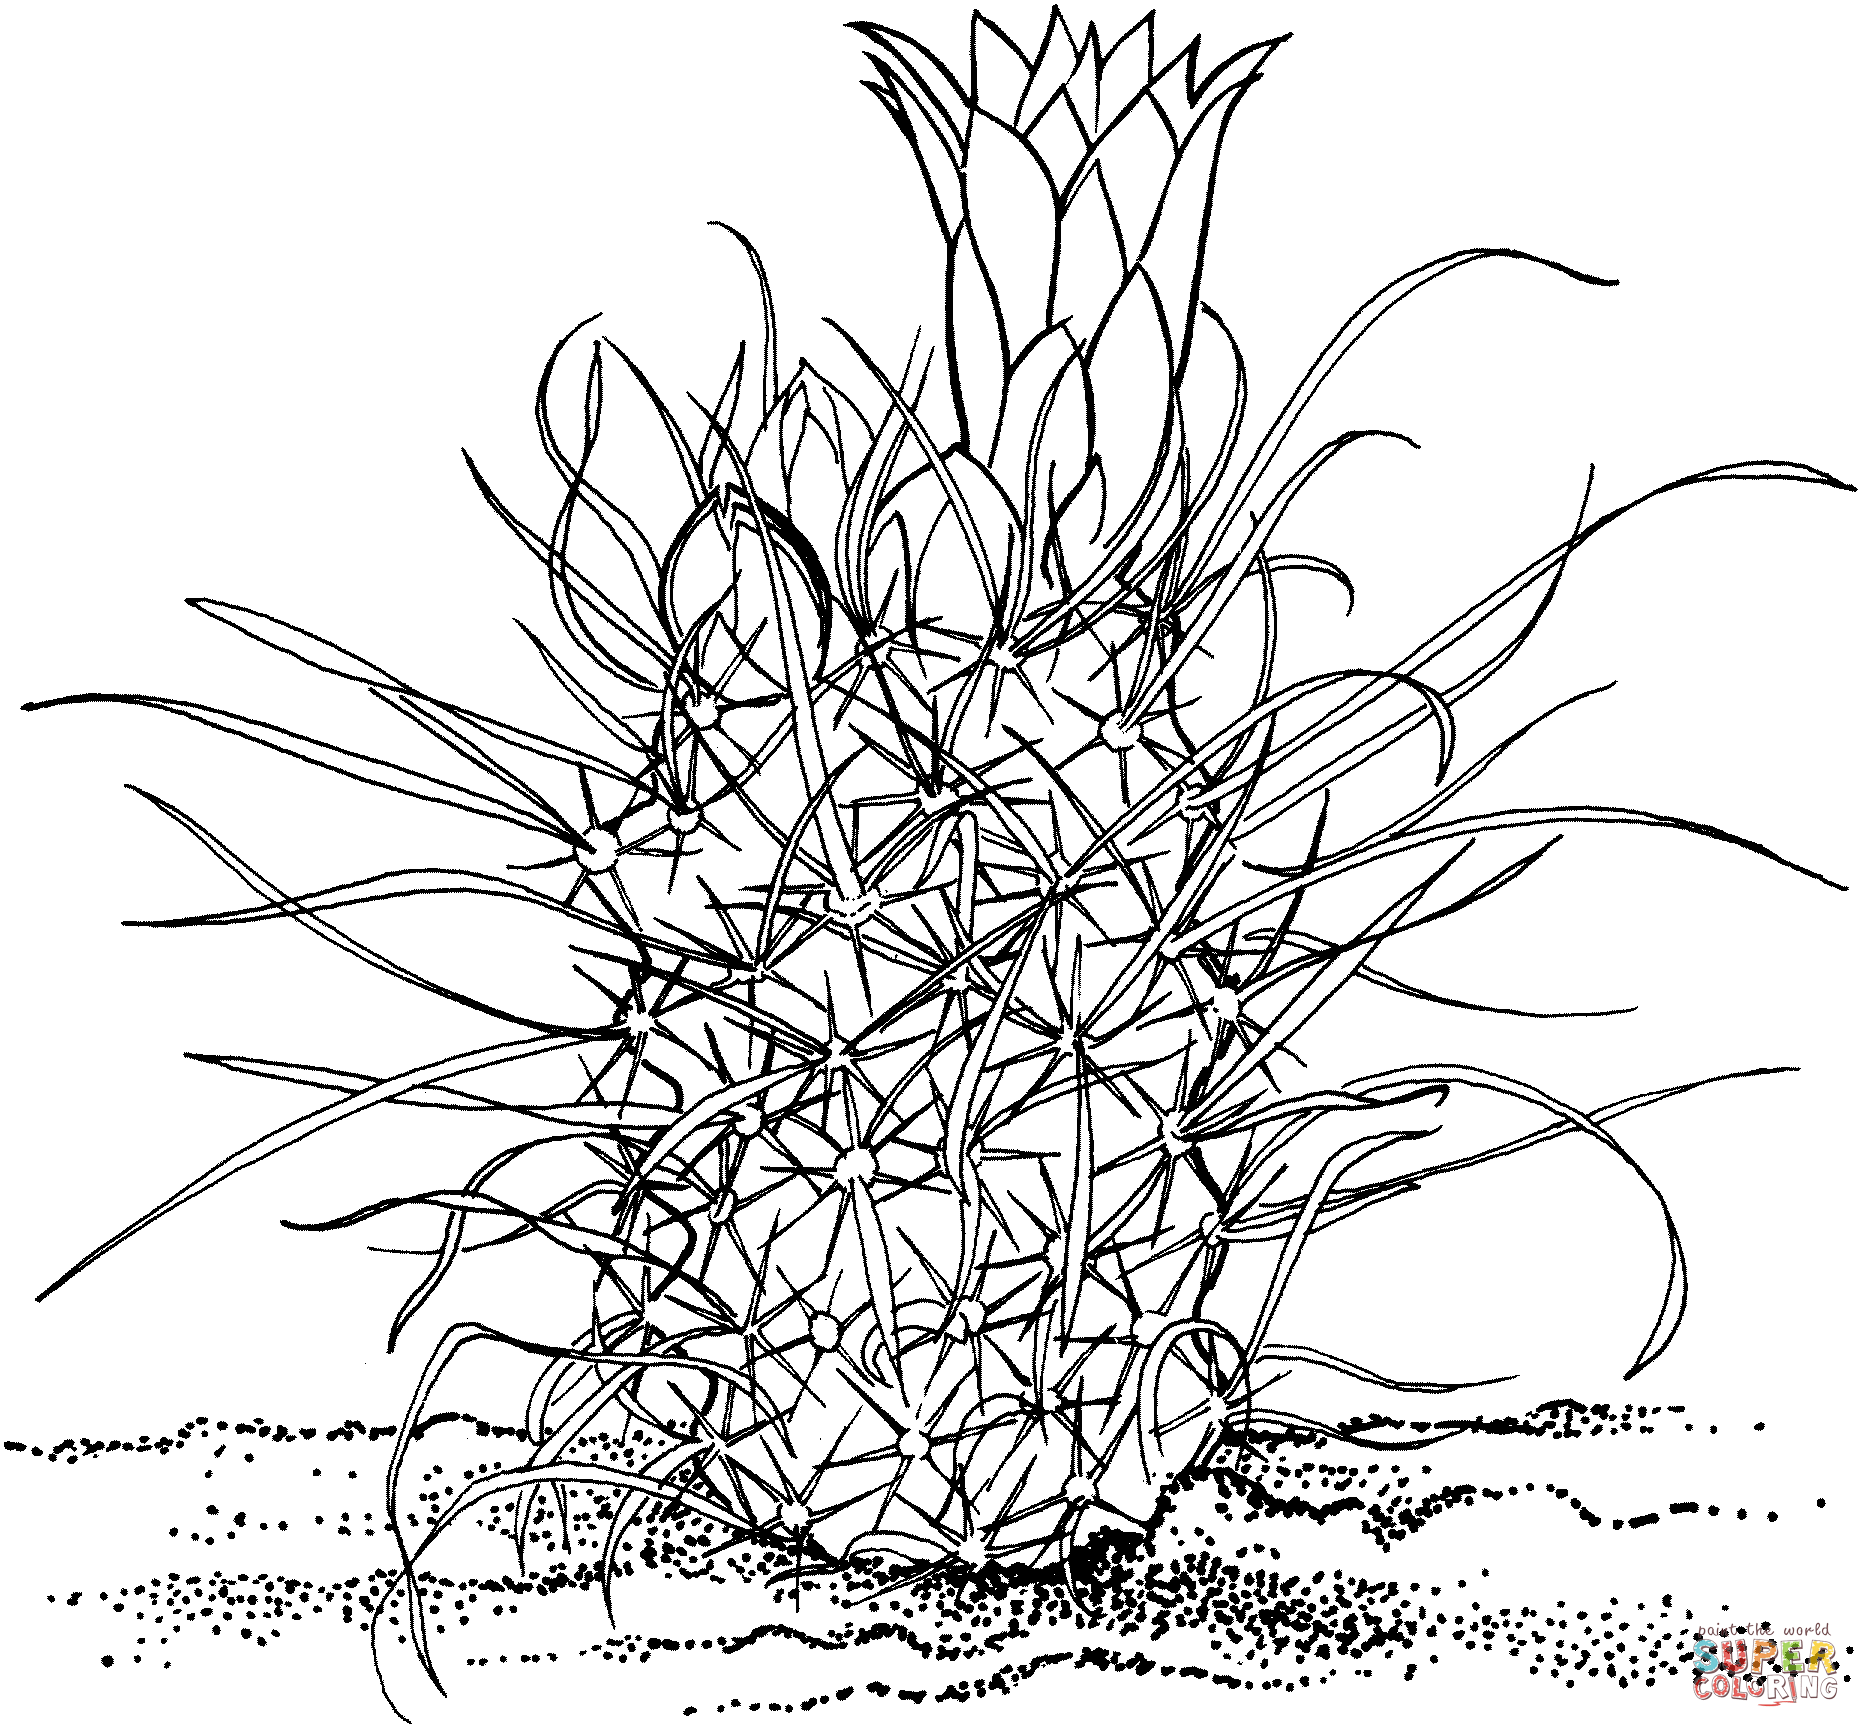 Toumeya Papyracantha o Gramma Grass Cactus da Cactus